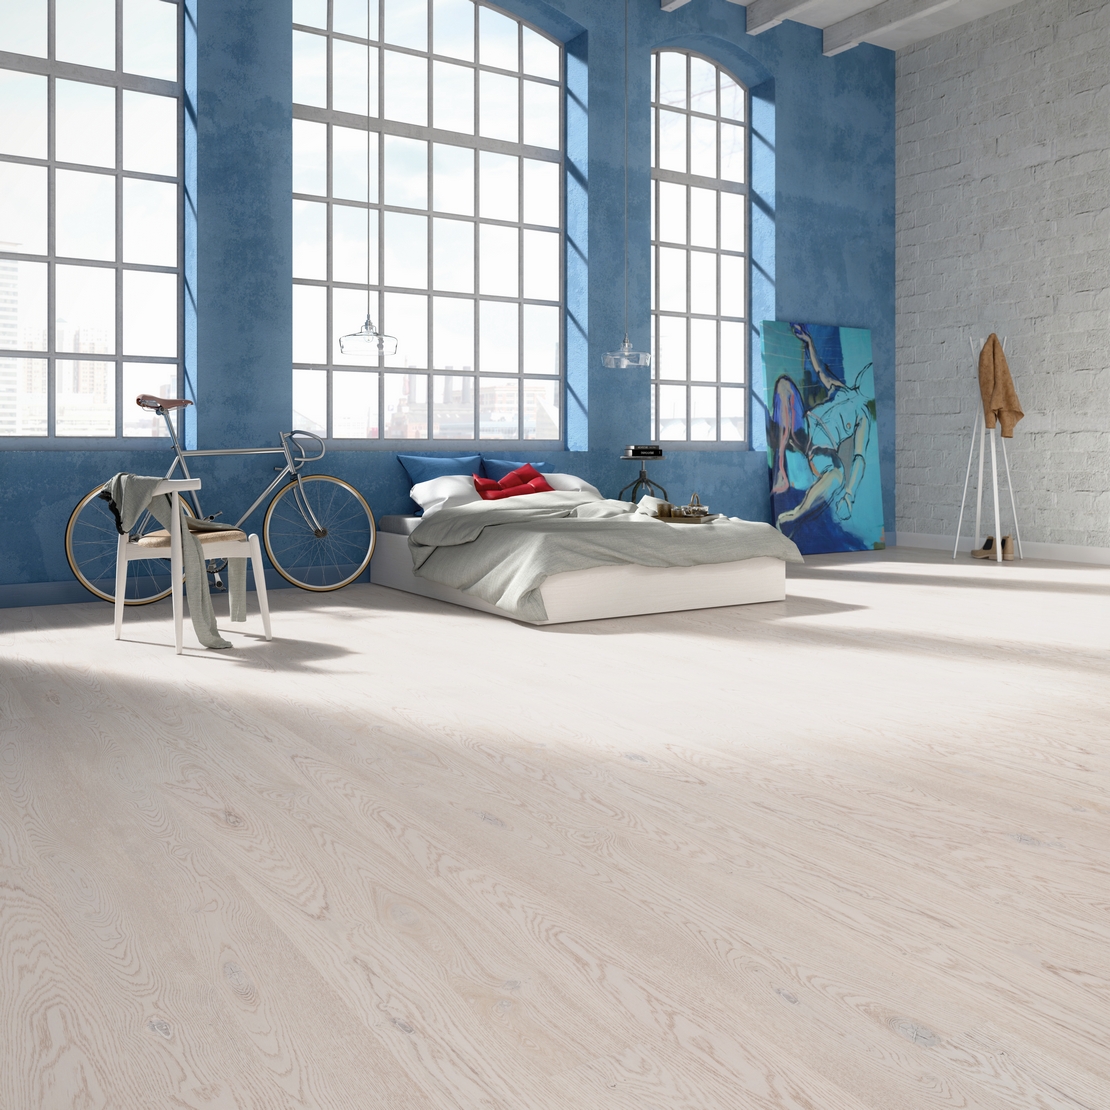 Chambre au style industriel moderne minimaliste, parquet en bois naturel blanc. - Inspirations Iperceramica